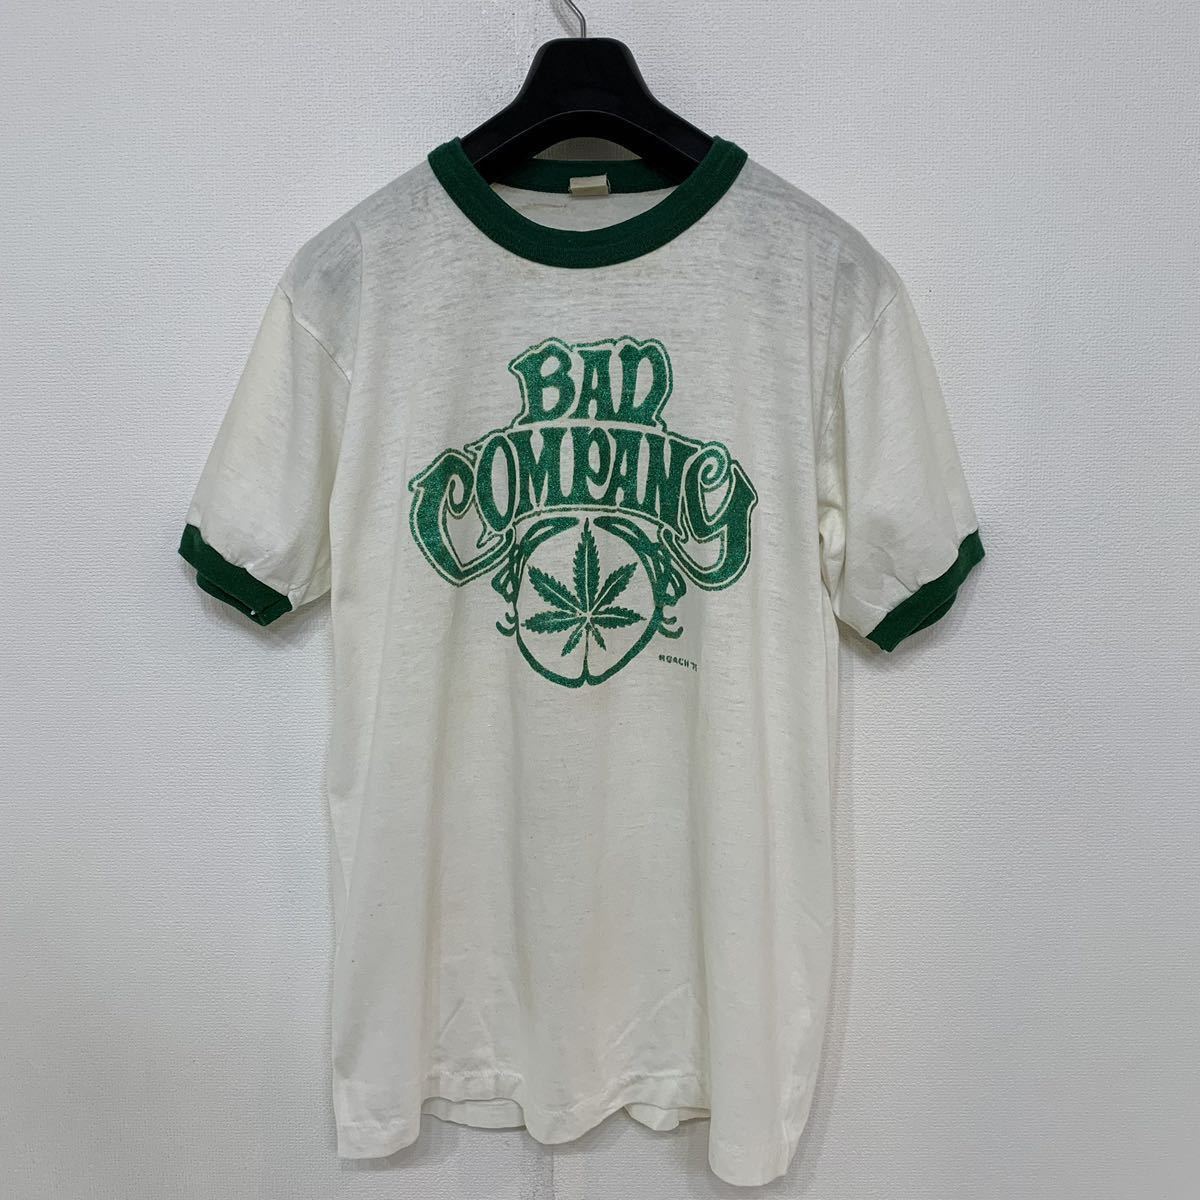 超人気 COMPANY BAD 製 アメリカ 年代 70 h193 SPORTS バッドカンパニー ビンテージ vintage 75' 70s グリーン ホワイト L Tシャツ リンガー WEAR 文字、ロゴ